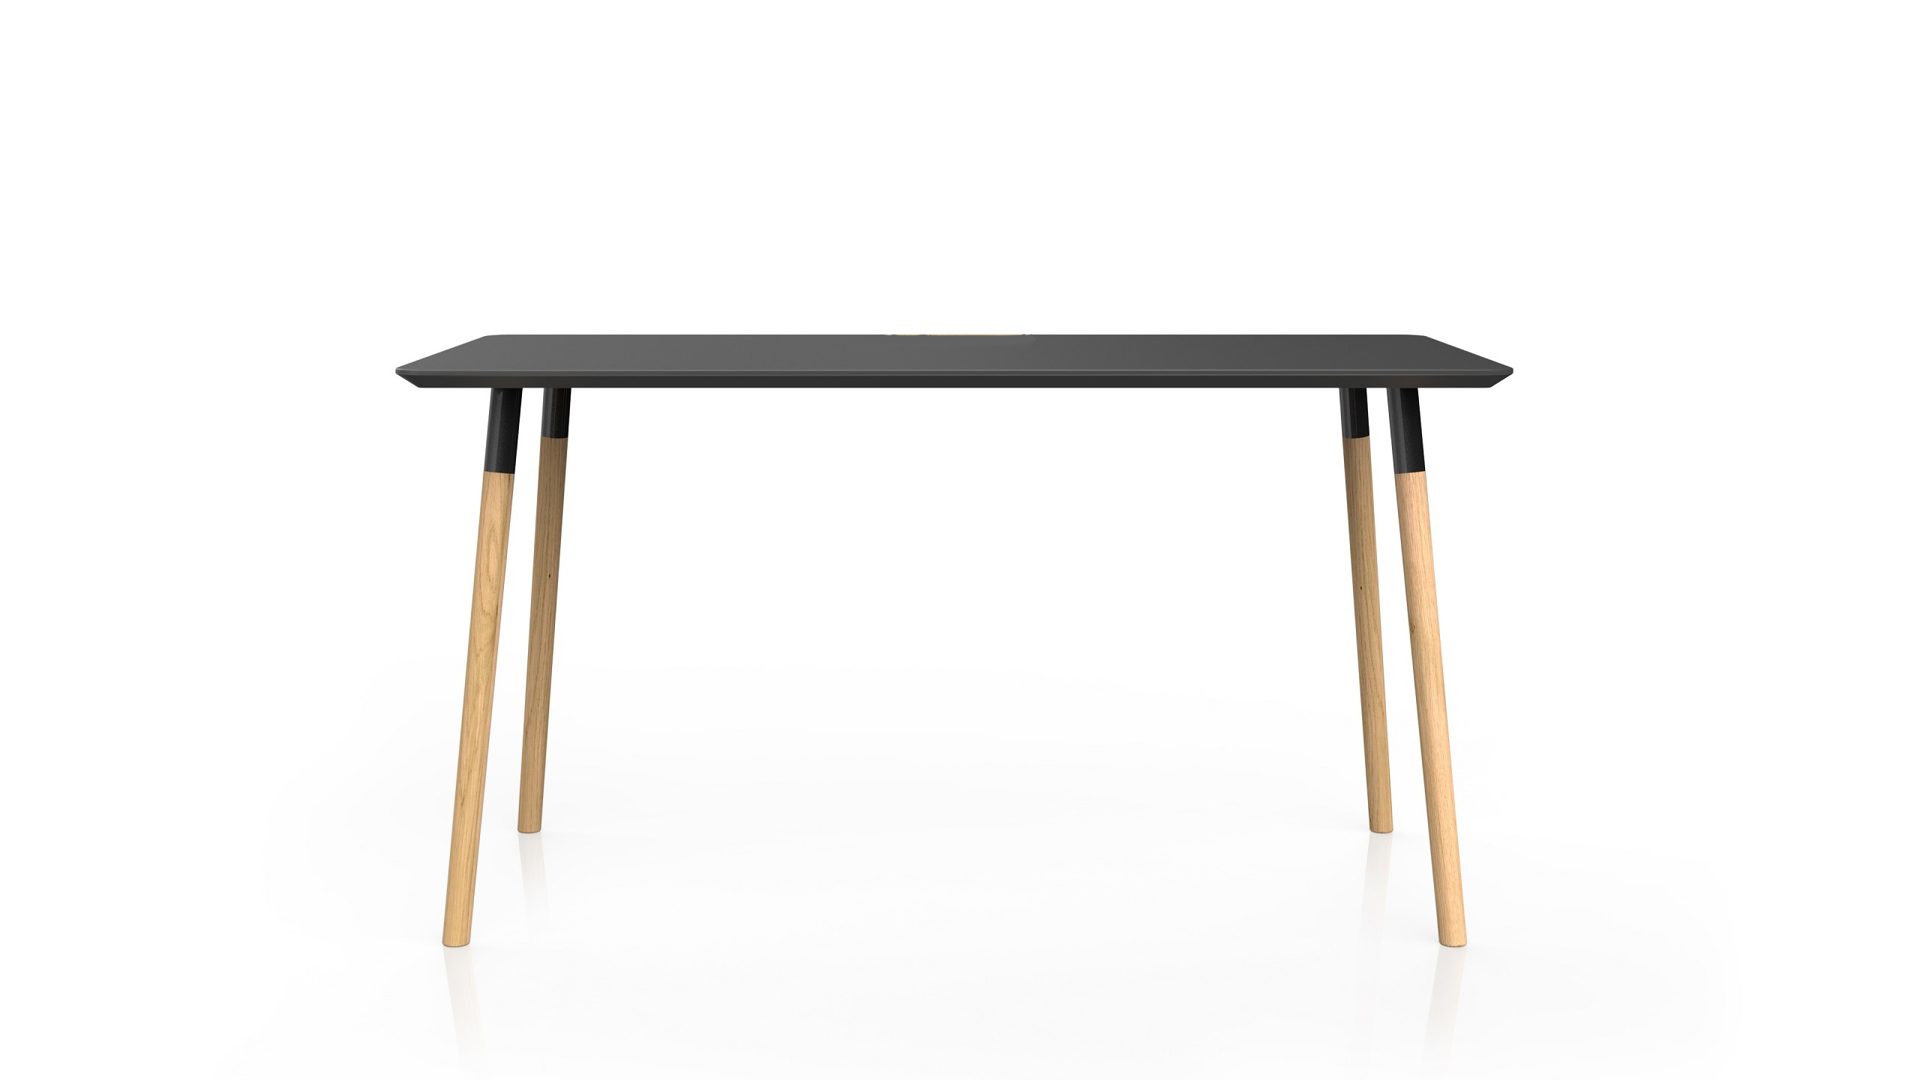 Tisch Vario aus Metall Holz in Schwarz Holzfarben Esstisch Arbeitstisch Haimish 160 x 75 x 80 cm Platte schwarz supermatt, Beine Stahl schwarz - eiche massiv